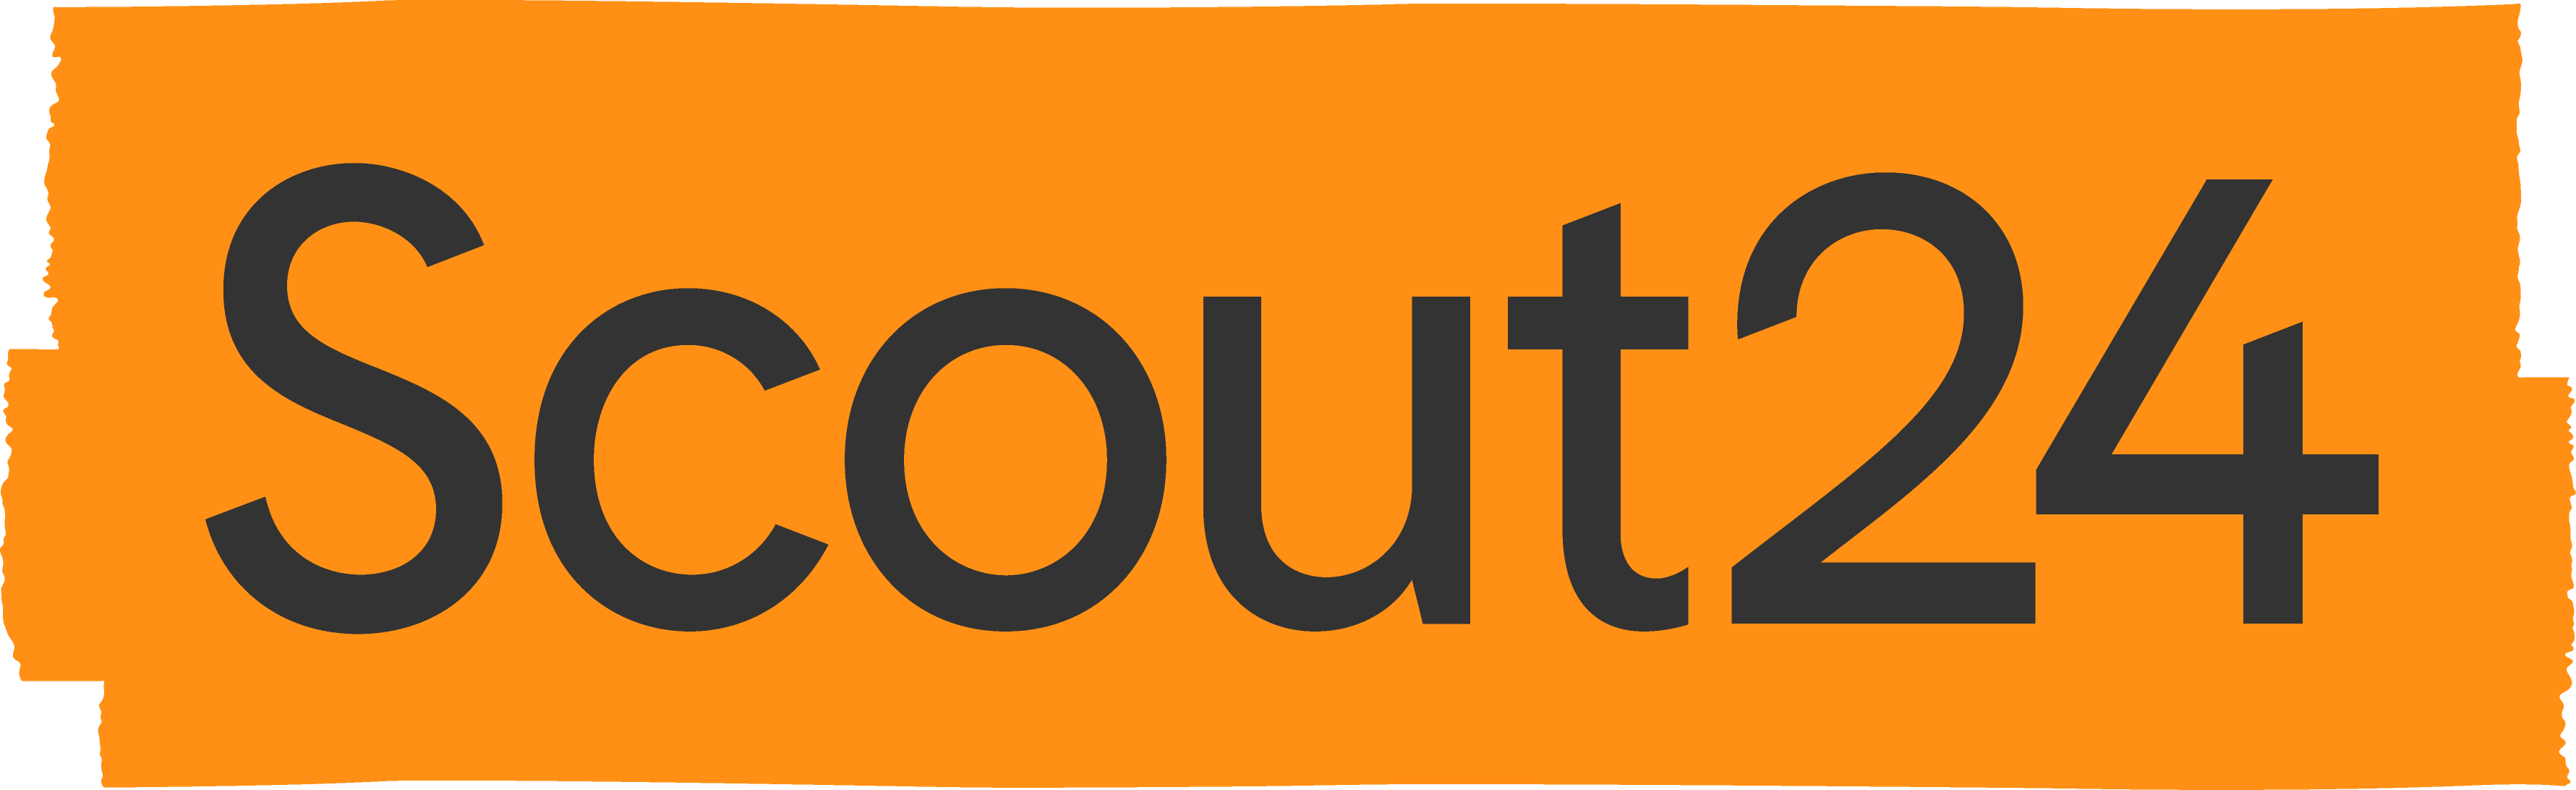 Logo de Scout24-image